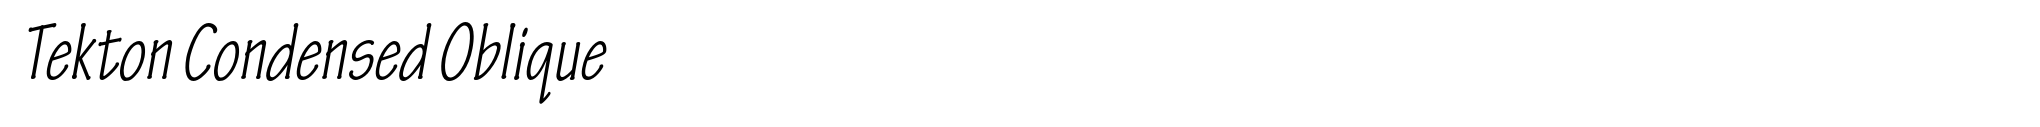 Tekton Condensed Oblique image